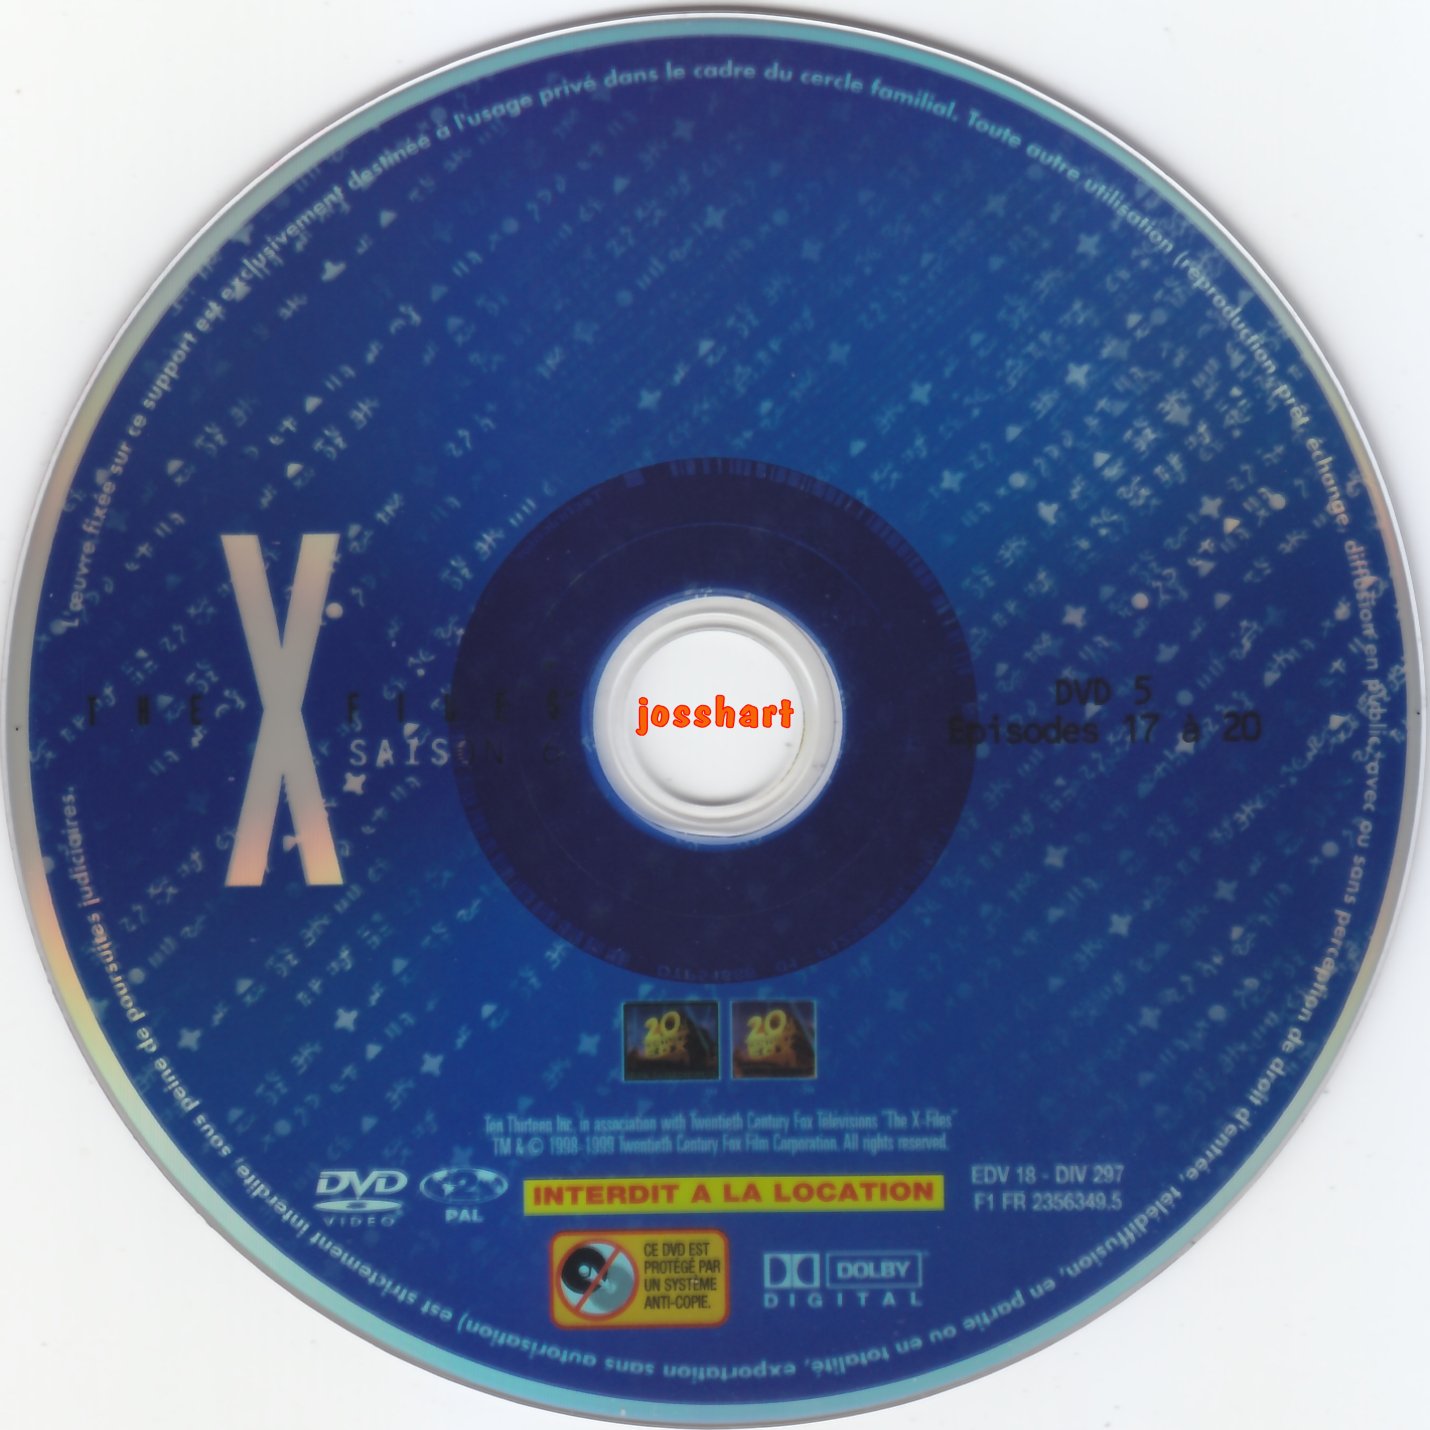 The X Files Saison 6 DVD 5 v2